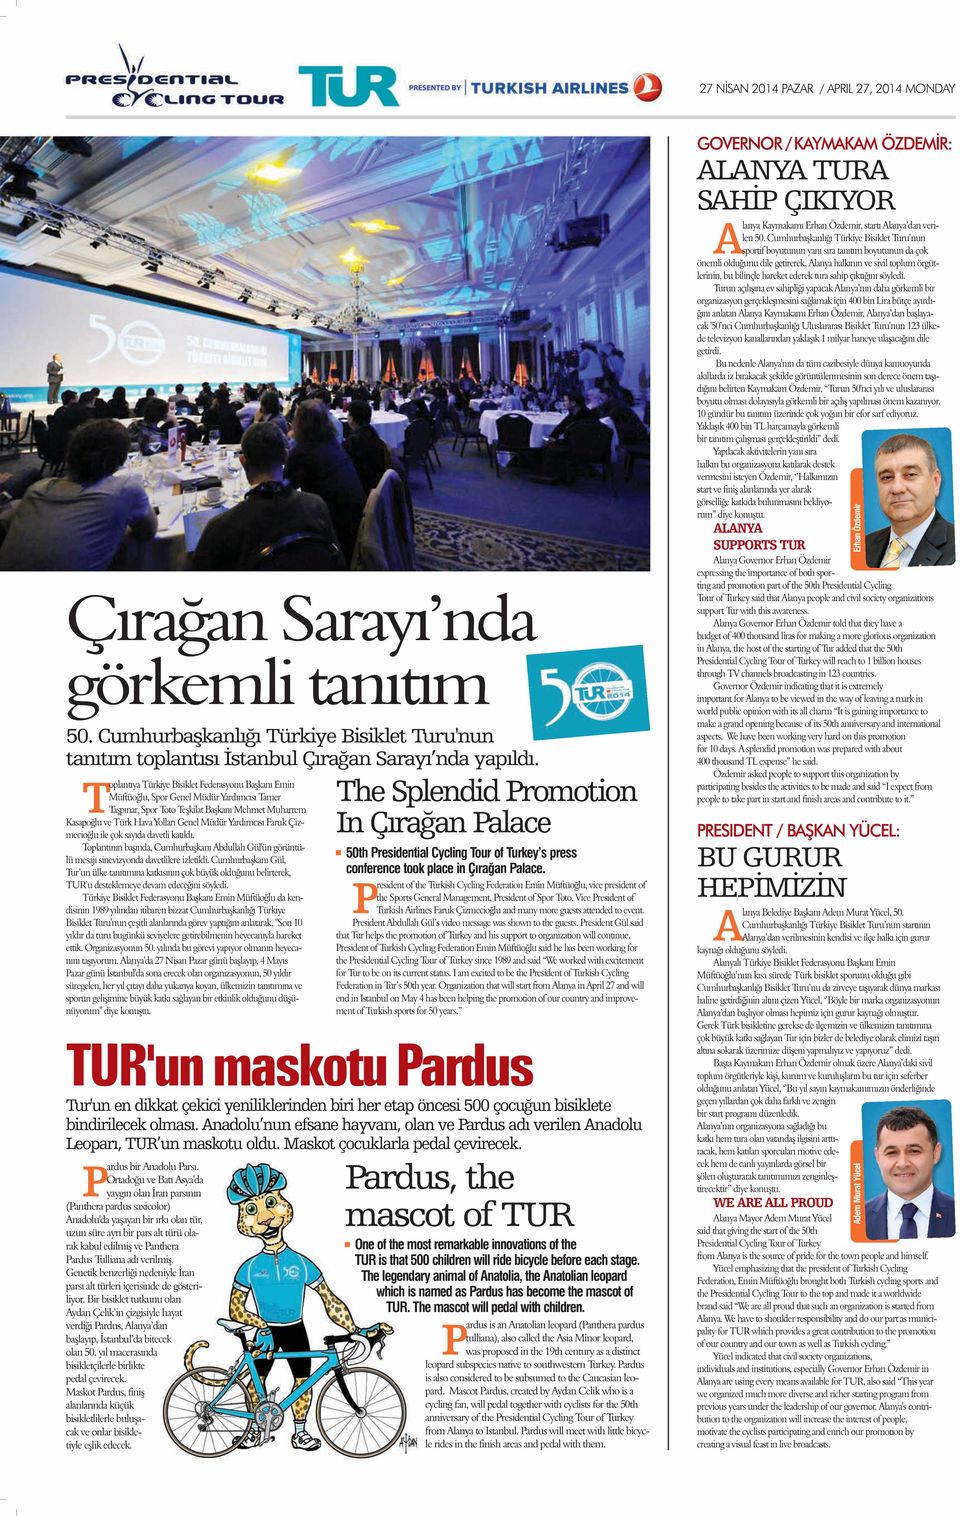 Yardımcısı Faruk Çizmecioğlu ile çok sayıda davetli katıldı. Toplantının başında, Cumhurbaşkanı Abdullah Gül'ün görüntülü mesajı sinevizyonda davetlilere izletildi.